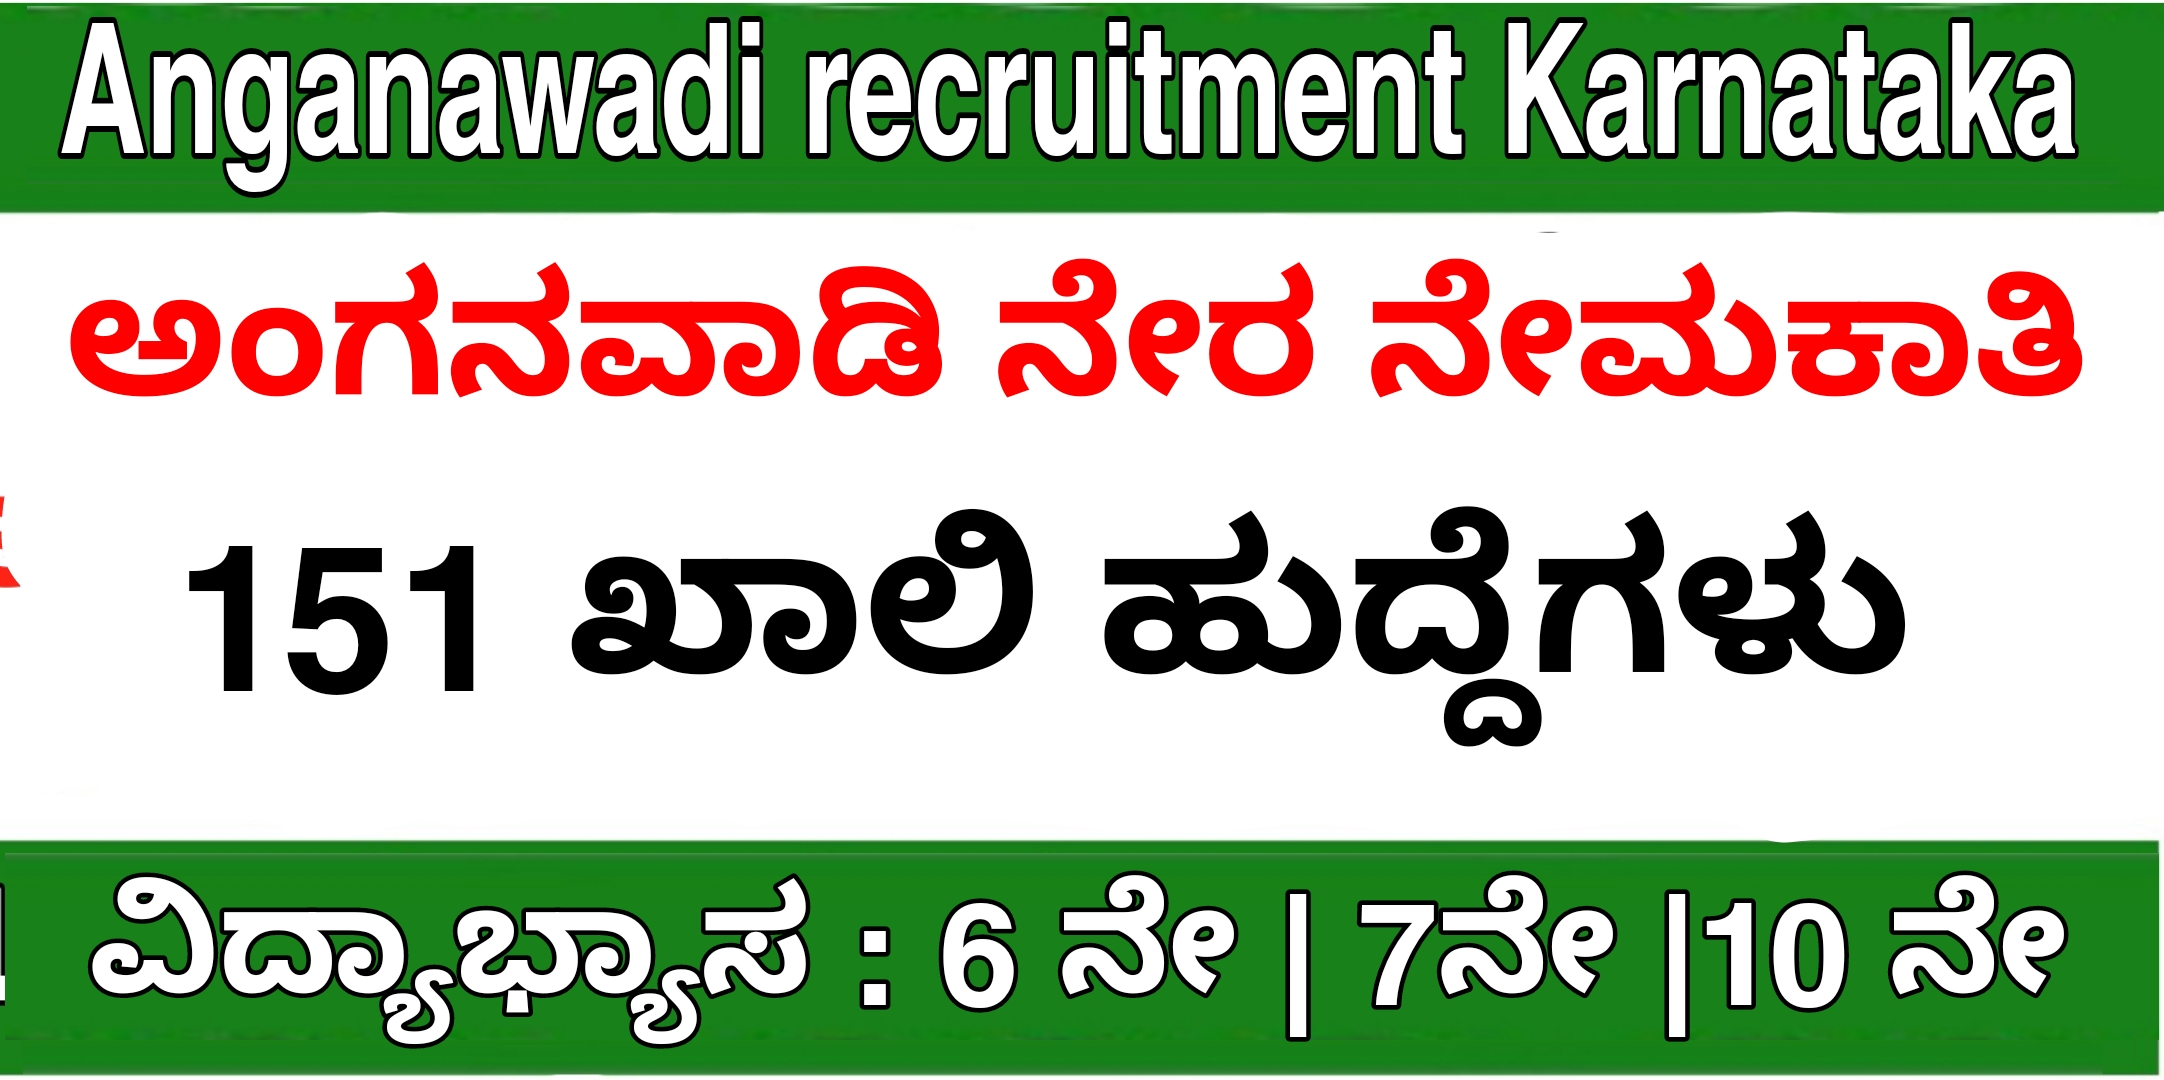 Anganawadi recruitment Karnataka 